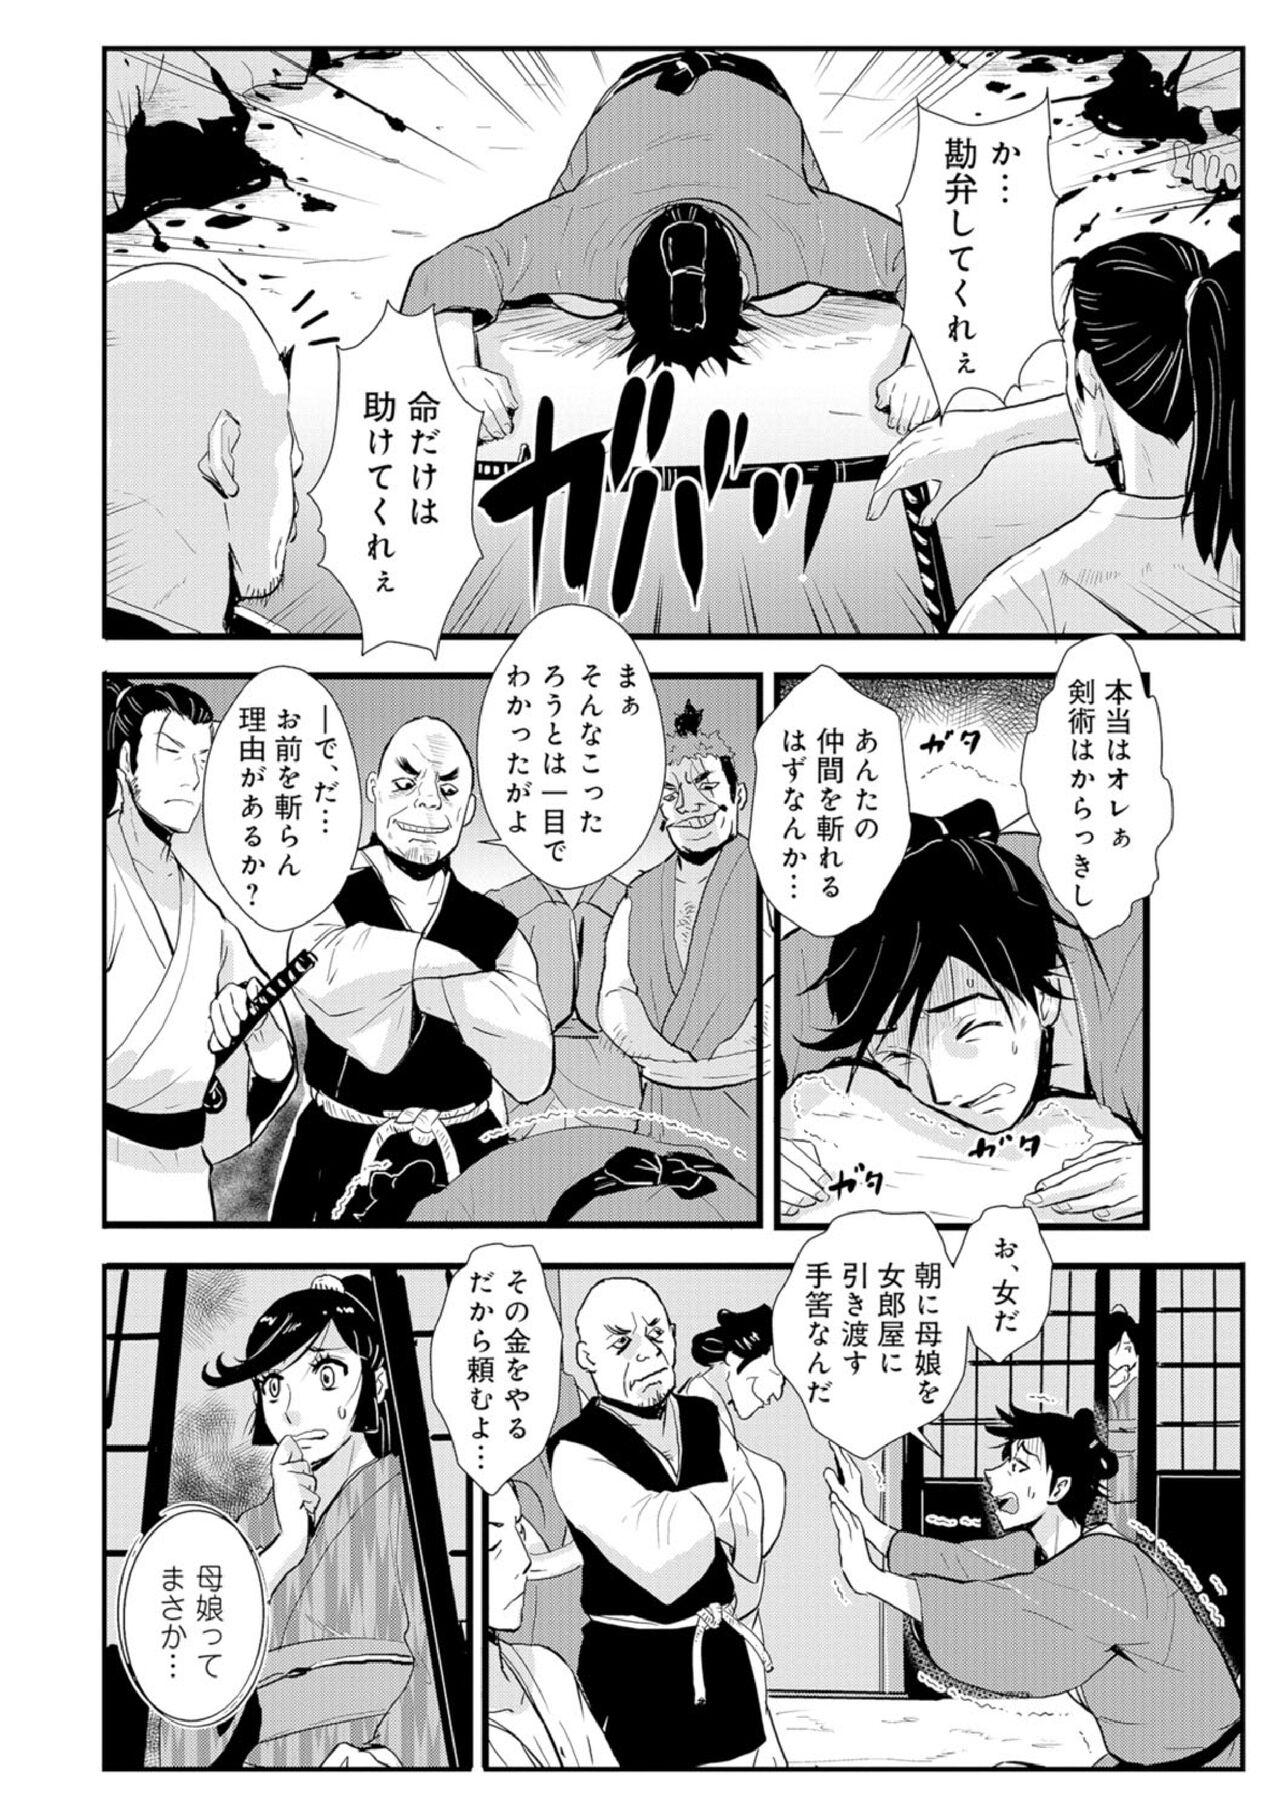 Masterbate Harami samurai 03 Hardcore Porno - Page 10